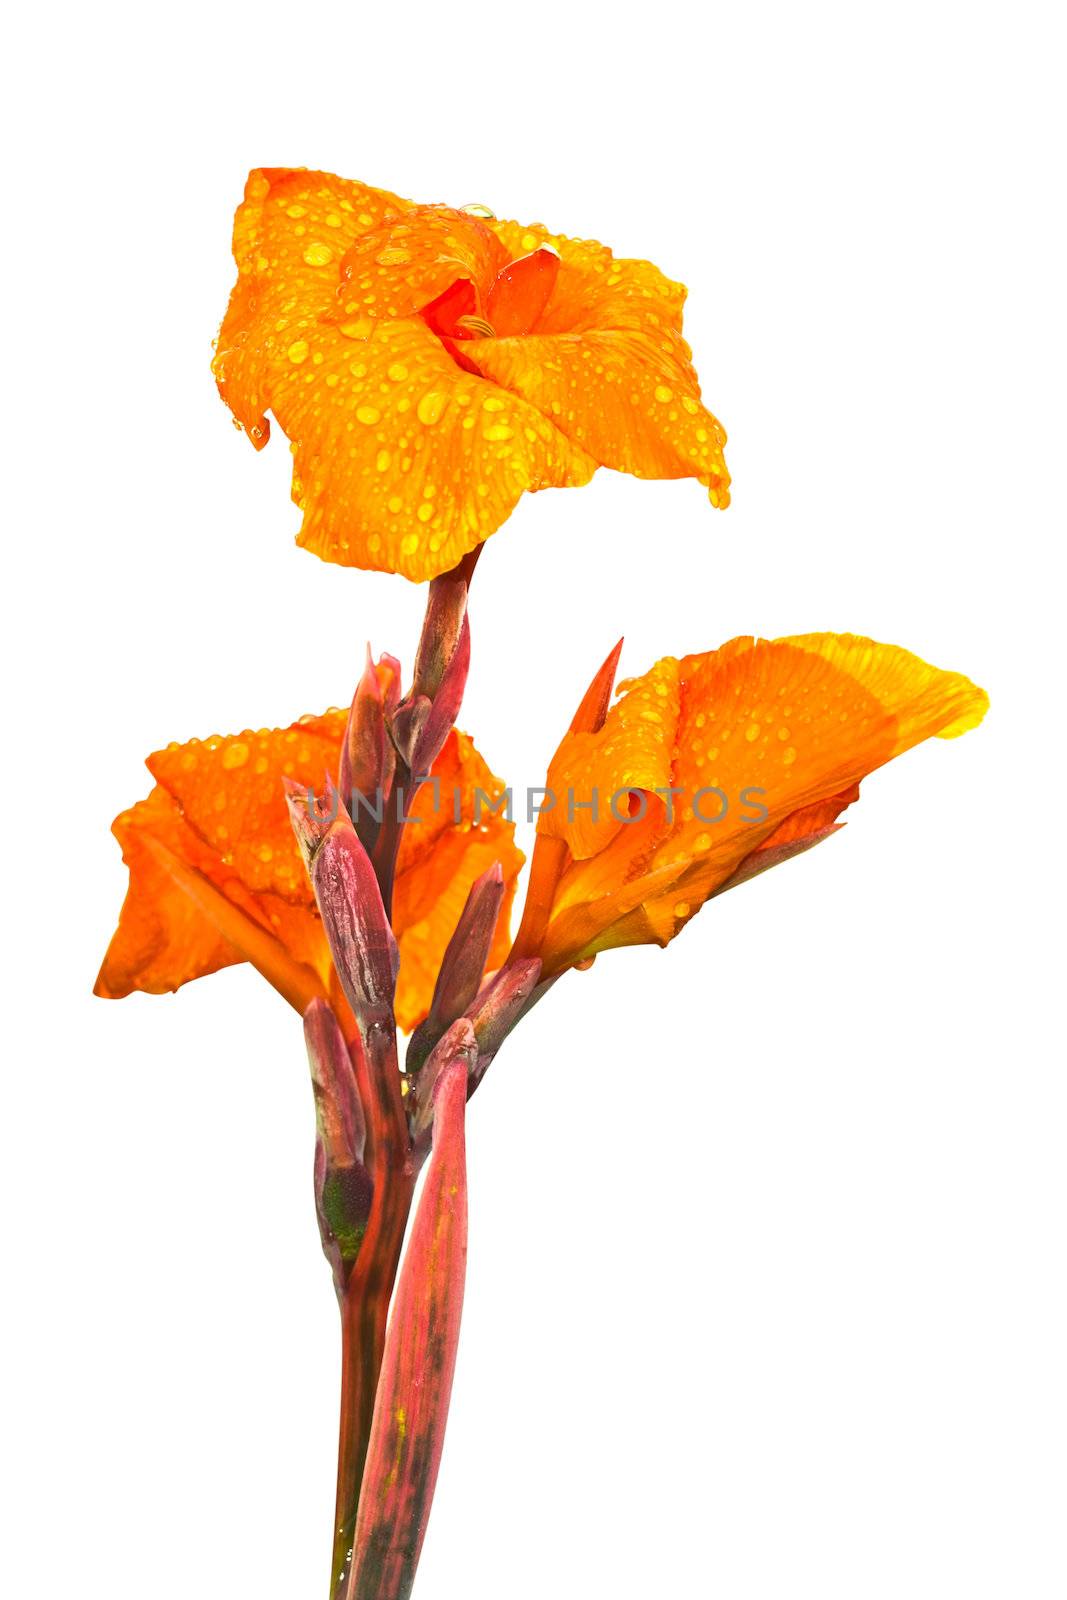 Orange flower isolated on the white background